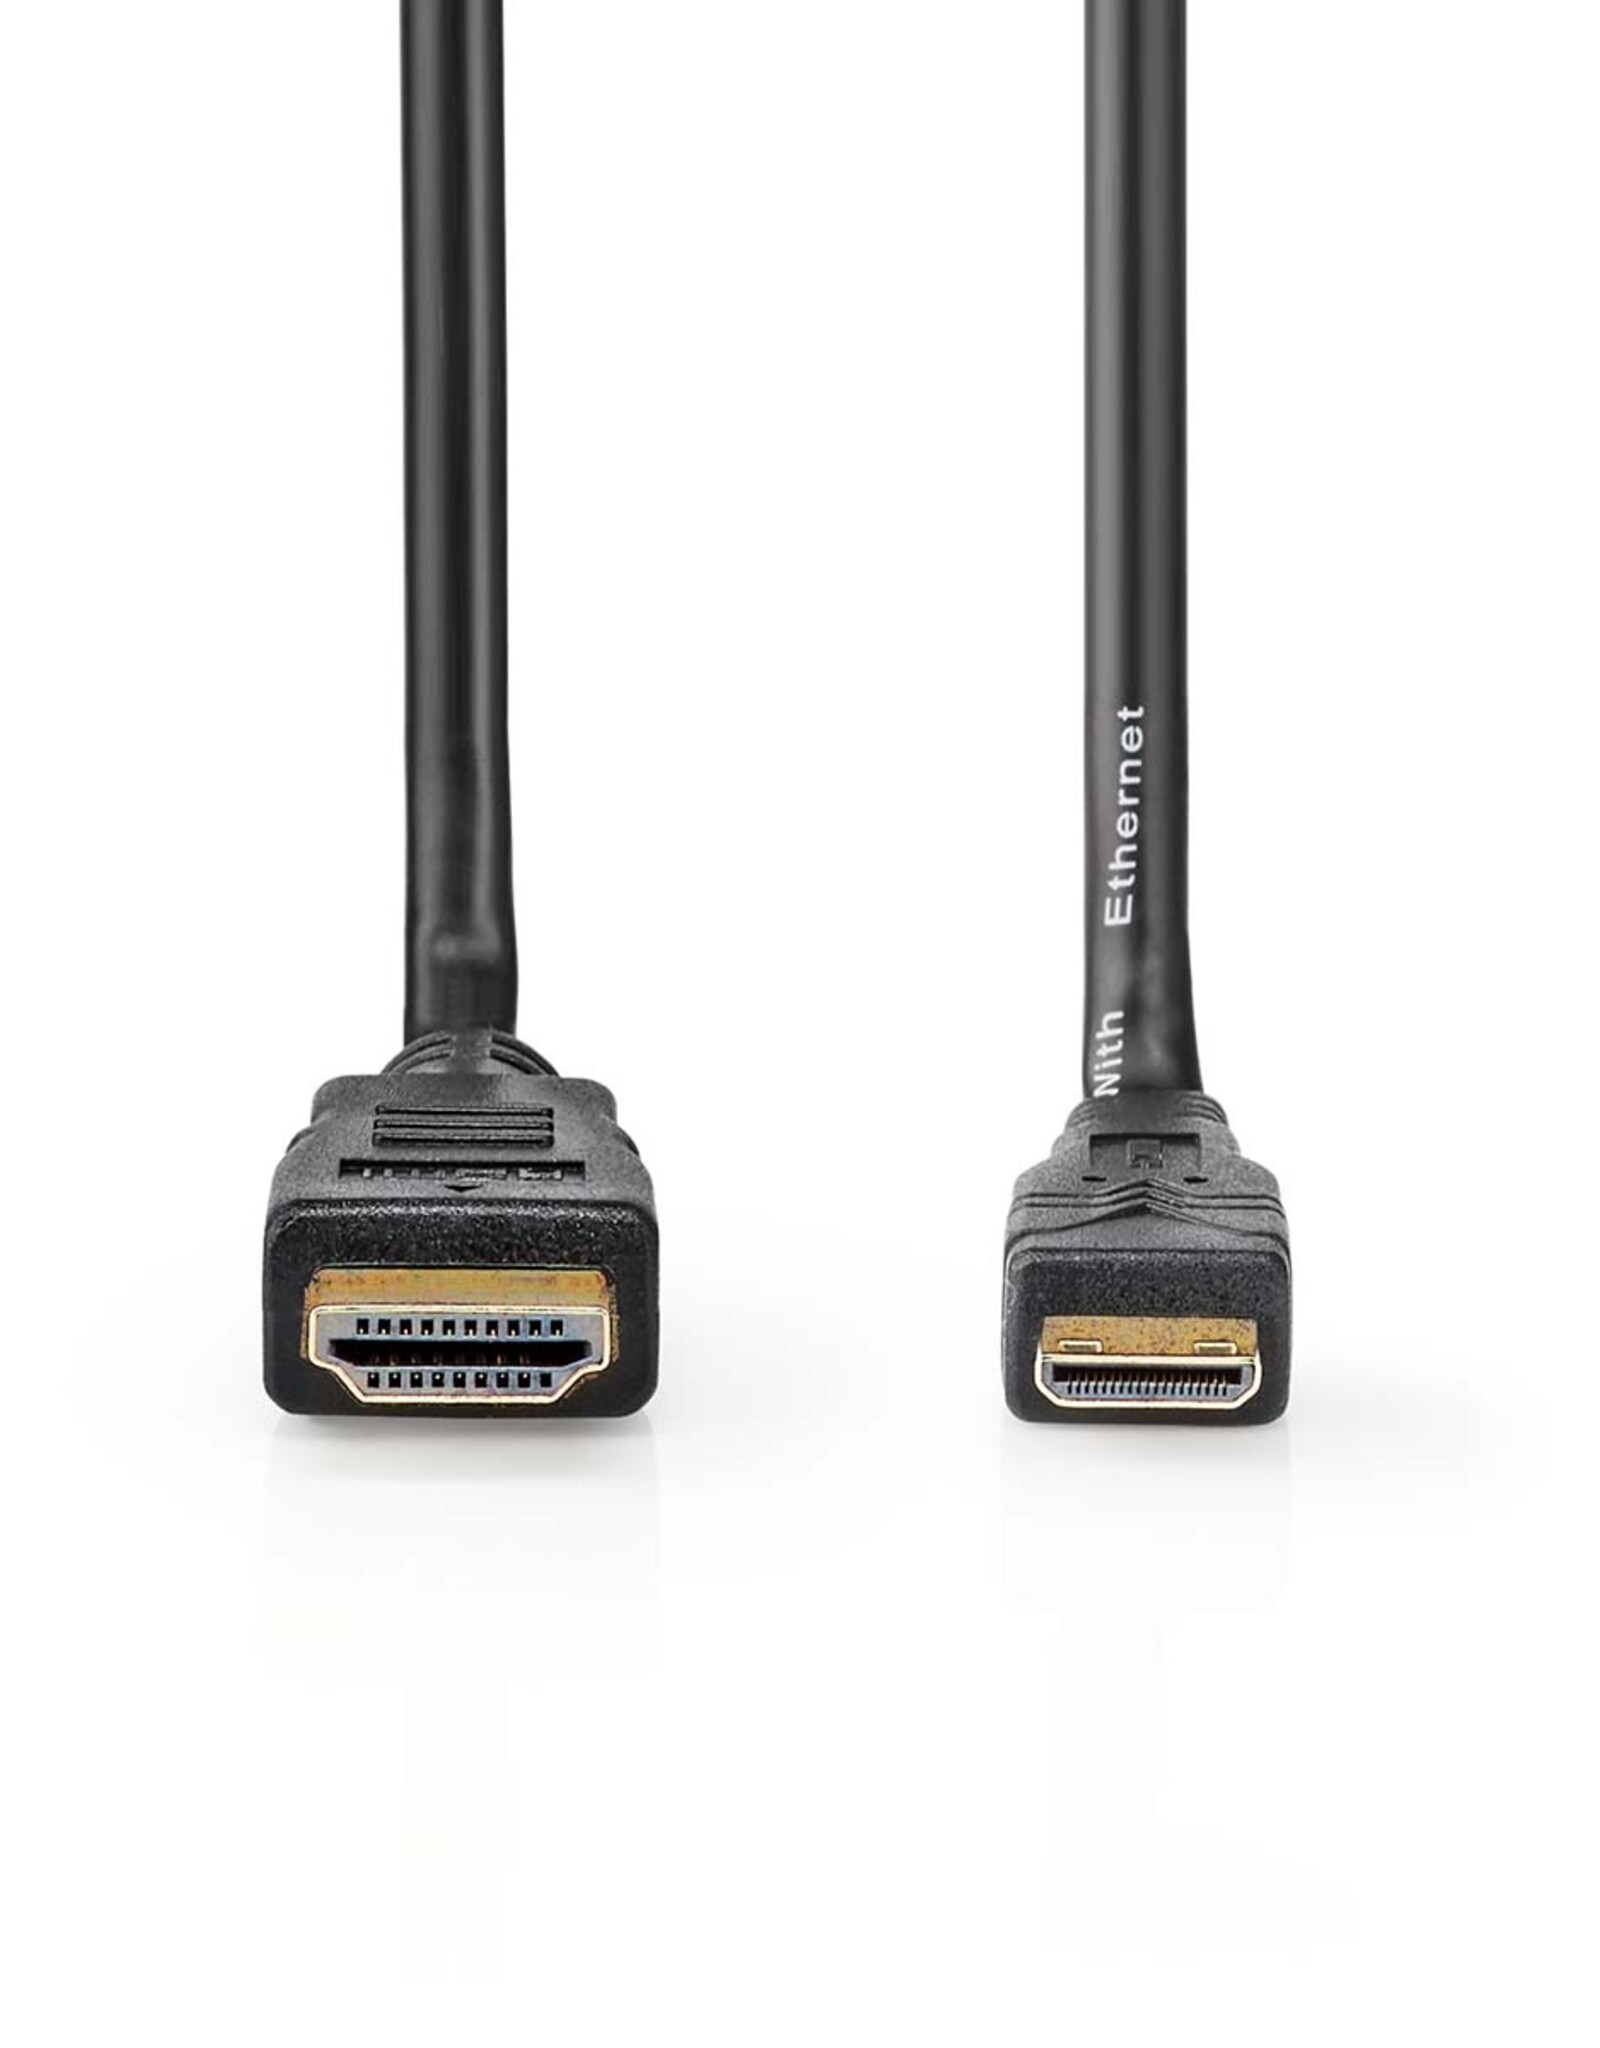 Nedis Nedis HDMI Mini & Micro Cables